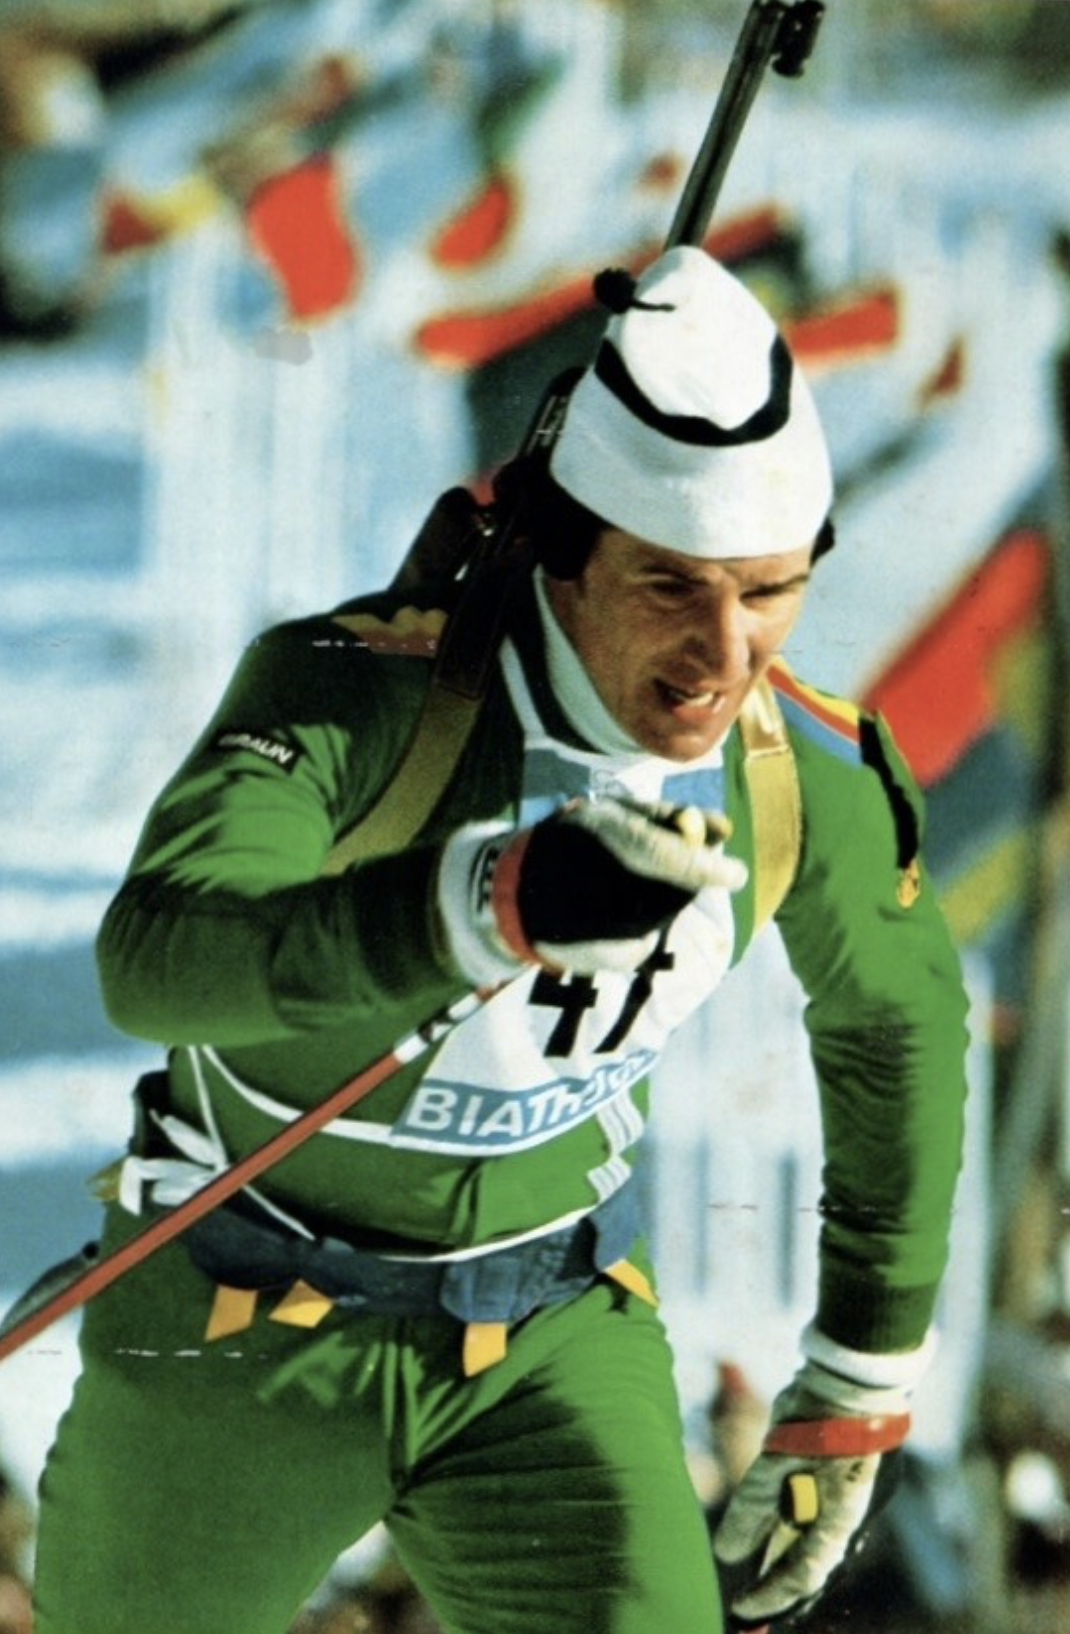 „Biwi“ Niedermeier bei den Olympischen Winterspielen 1964 in Innbruck 